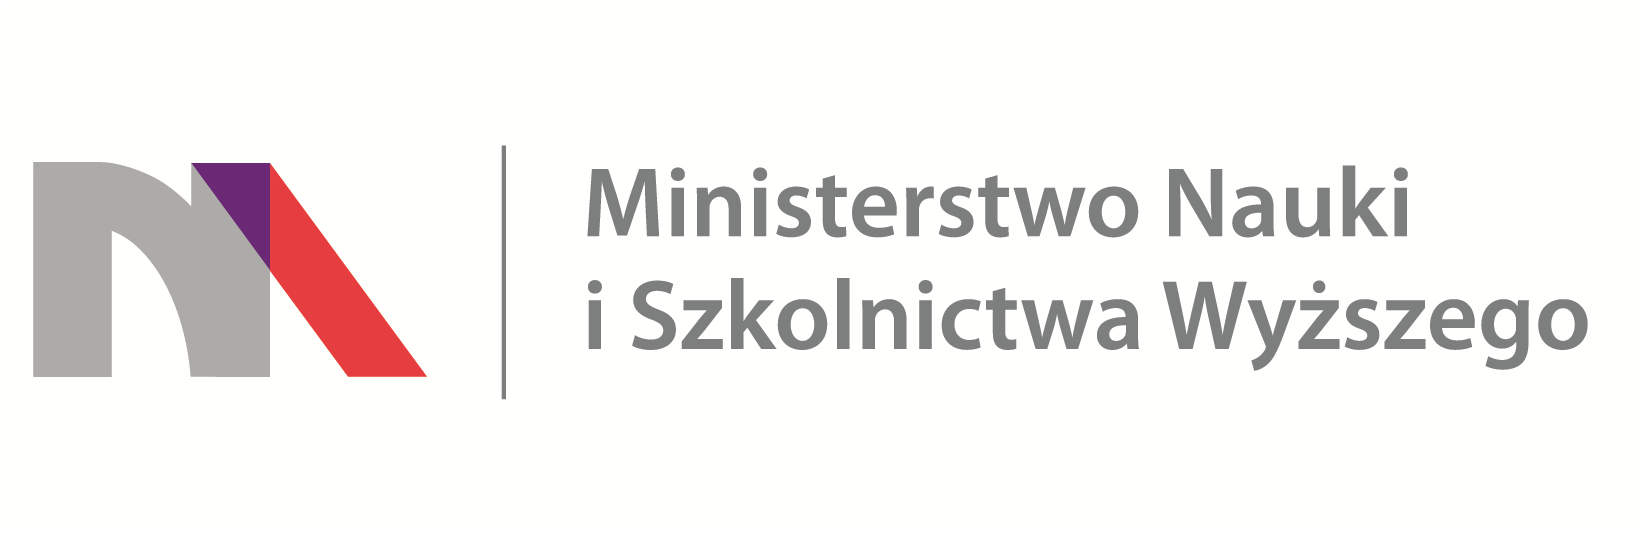 ministerstwo nauki i szkolnictwa wyzszego logo